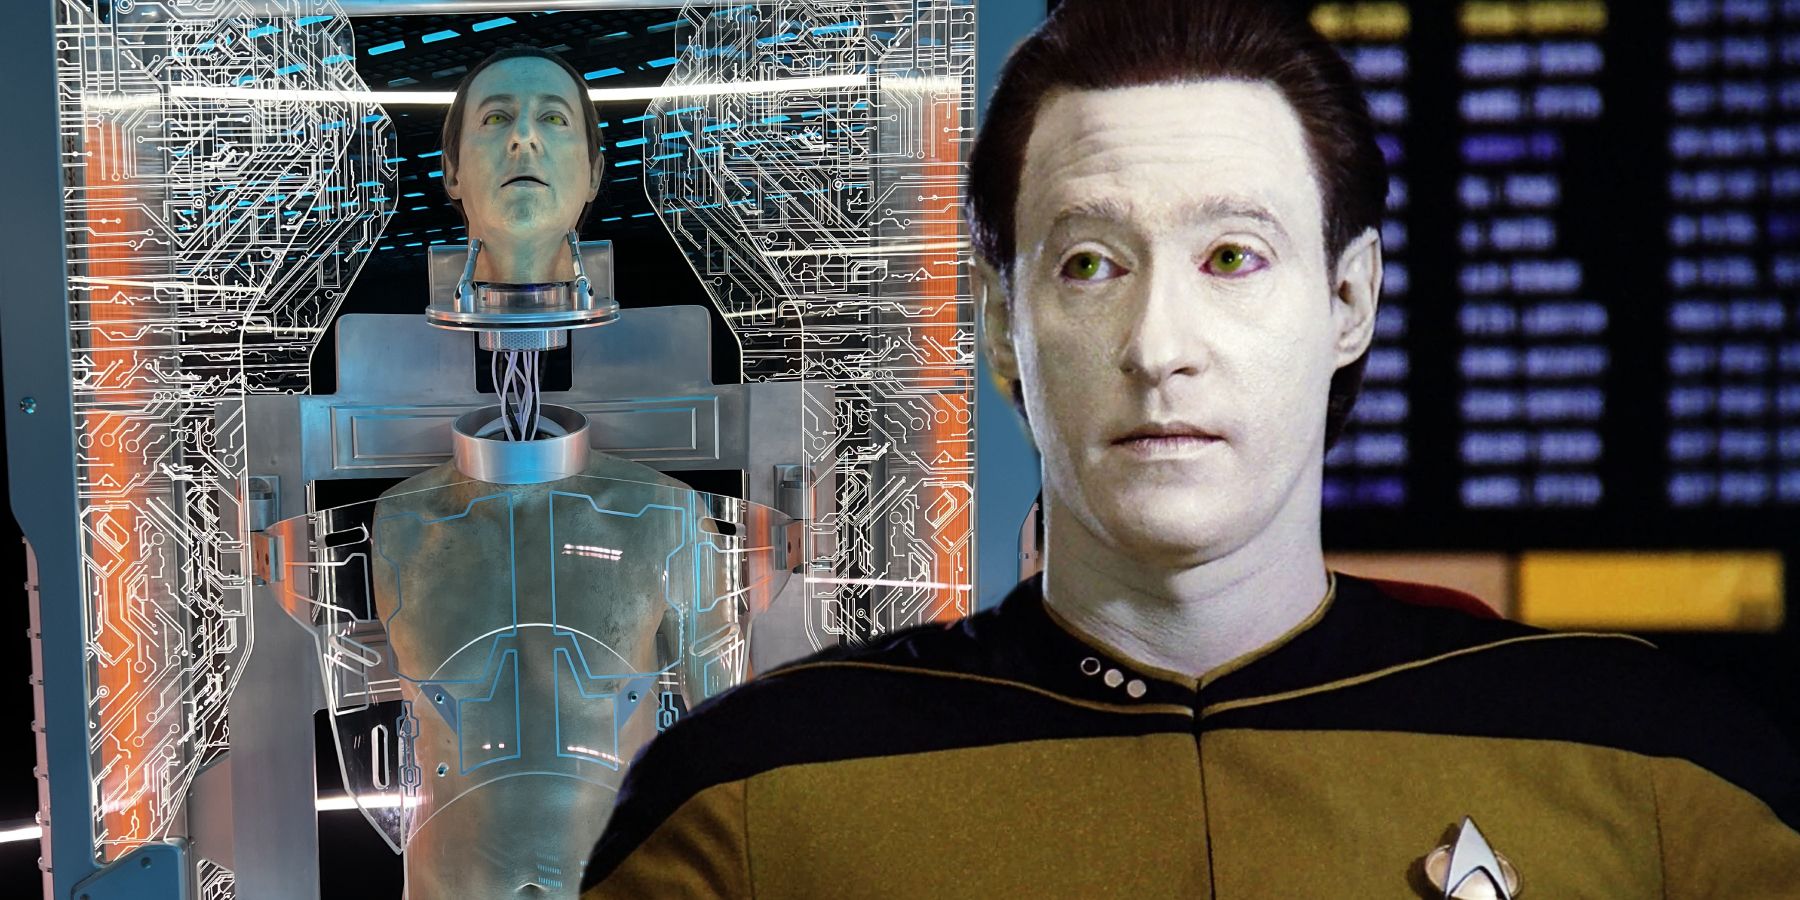 El extraño cráneo de Android de Data revelado en Star Trek Fan Art